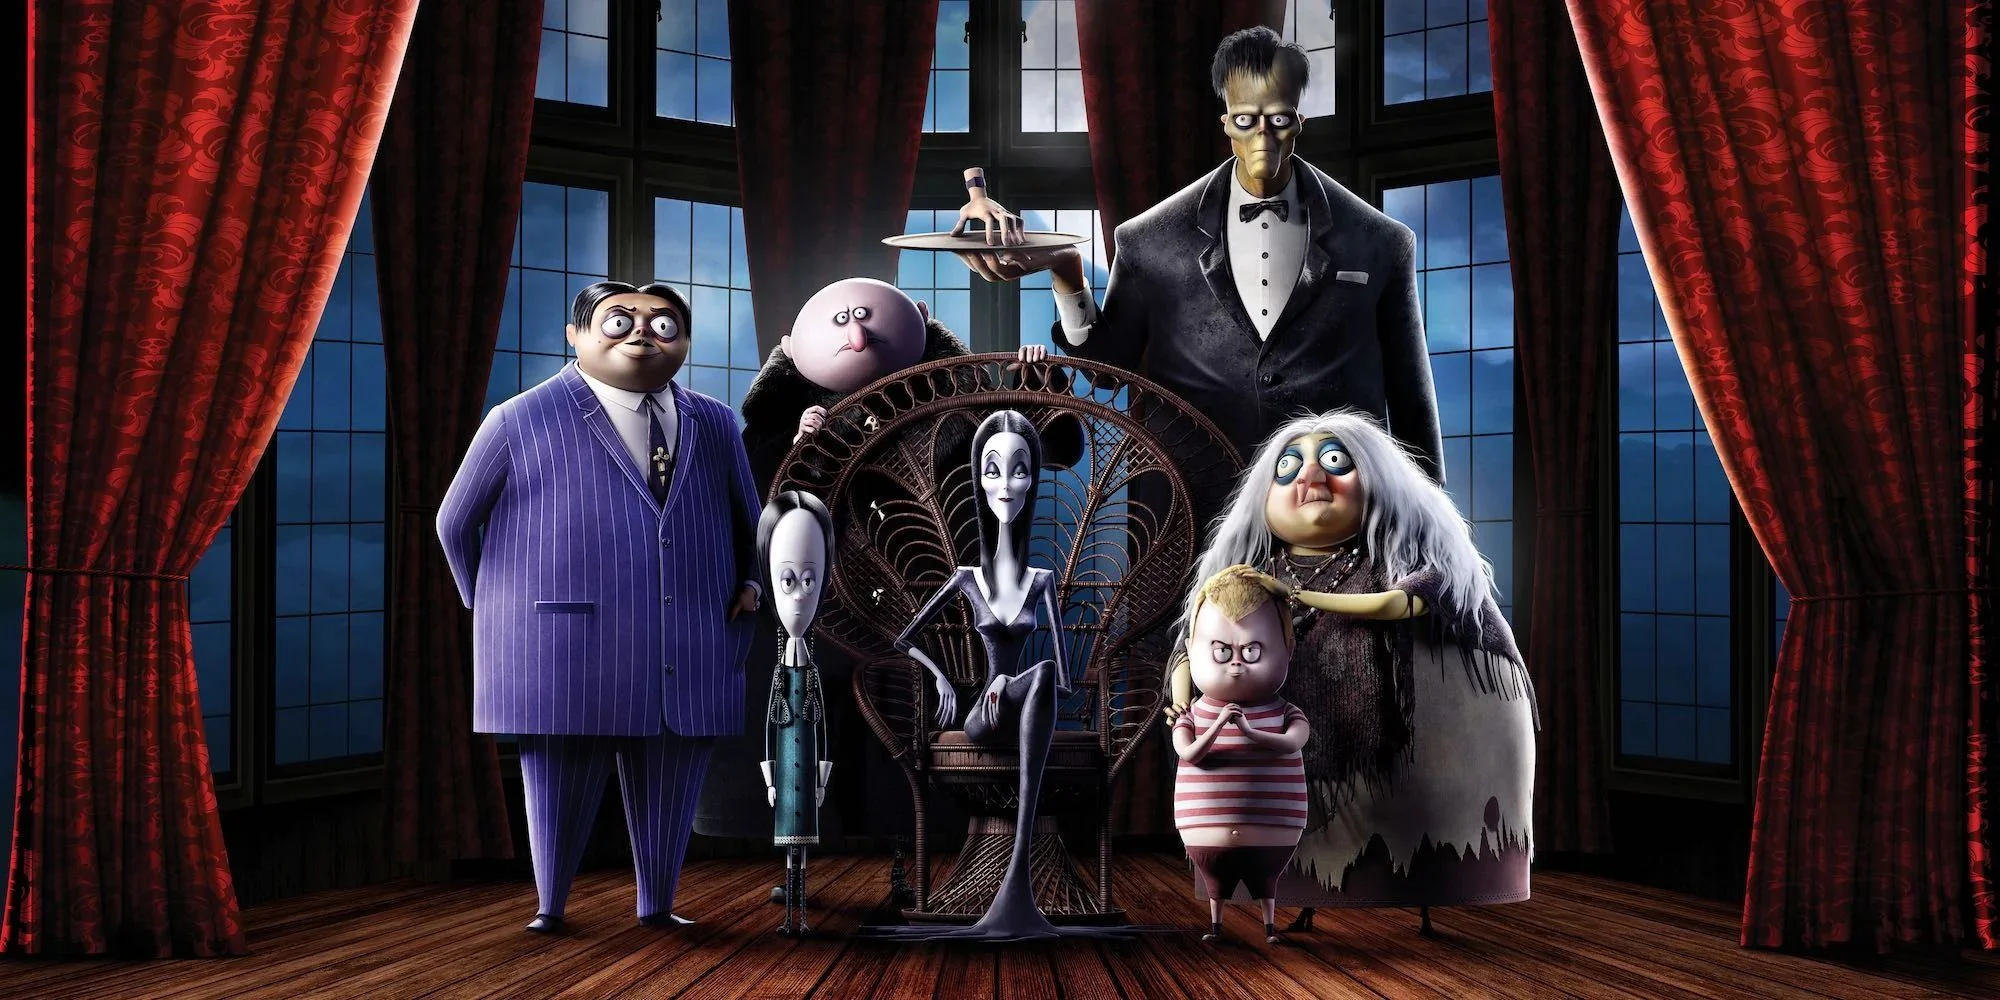 Анимационная «Семейка Аддамс» (The Addams Family) 2019 года в мире вышла 10 октября. В Российском прокате мультфильм появится более символично — 31 числа, под Хэллоуин.